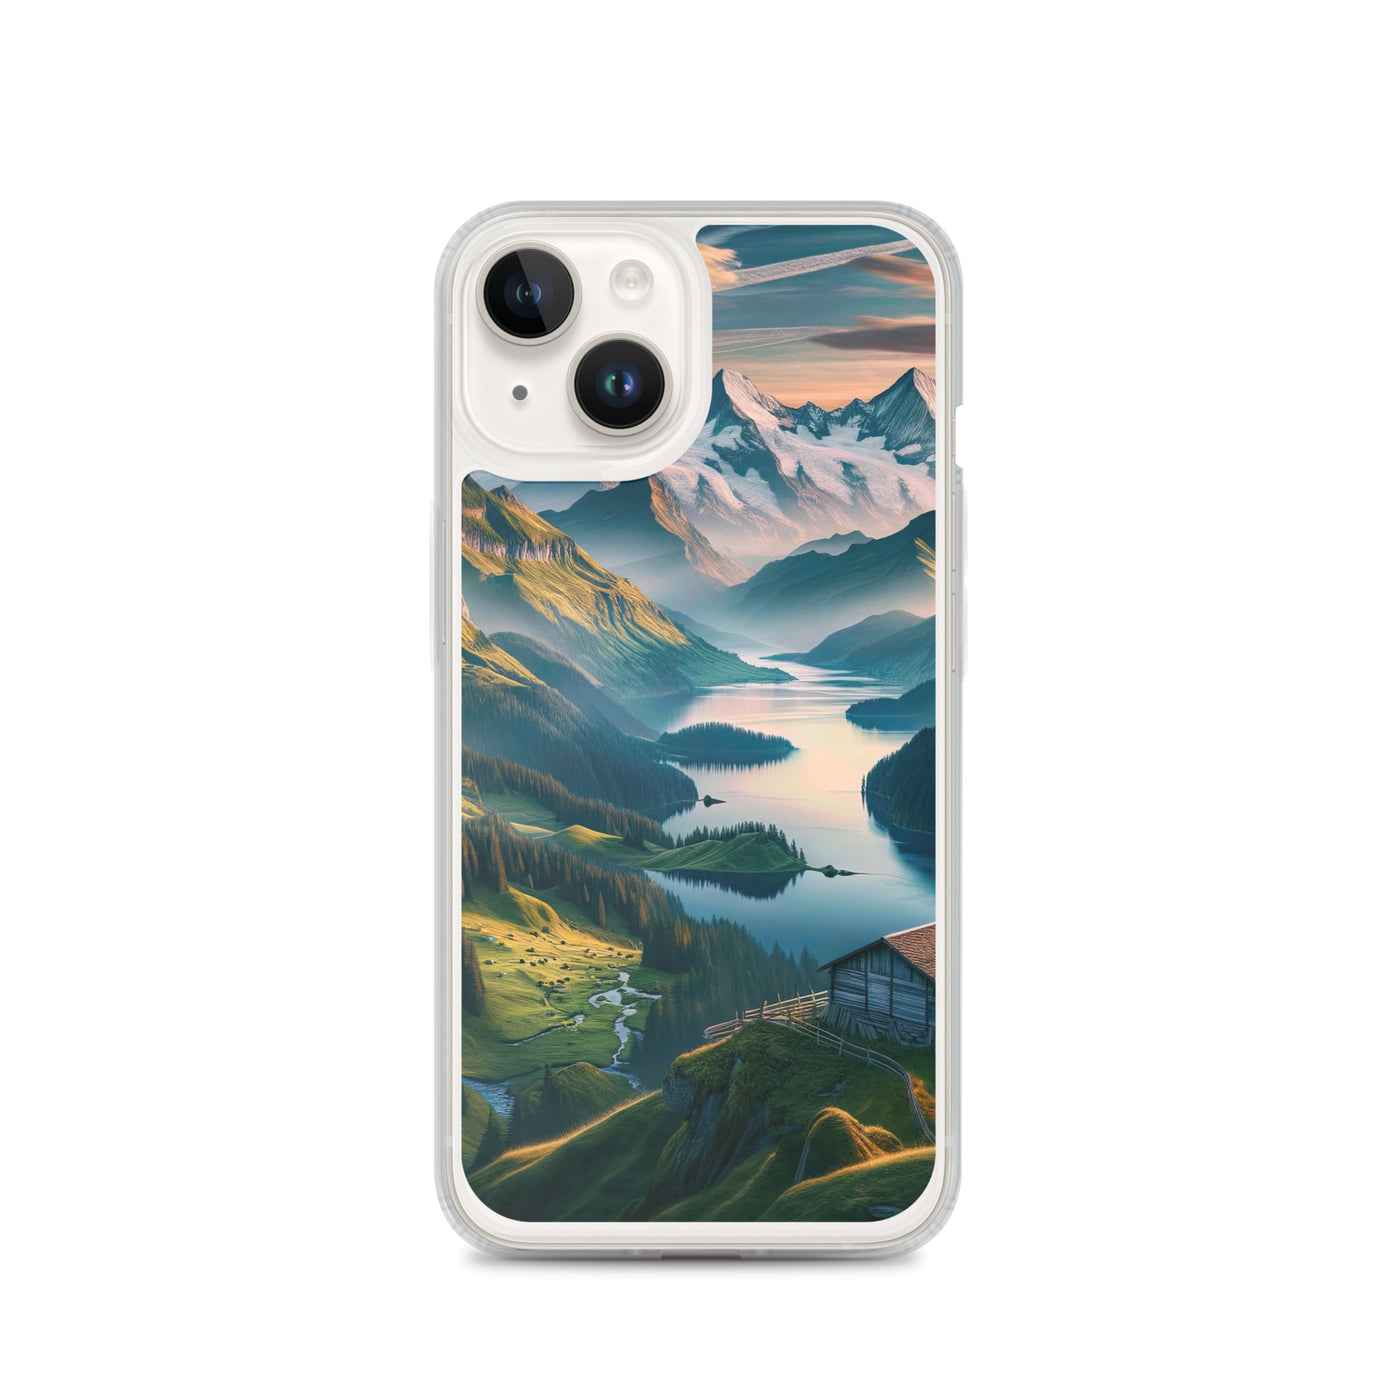 Schweizer Flagge, Alpenidylle: Dämmerlicht, epische Berge und stille Gewässer - iPhone Schutzhülle (durchsichtig) berge xxx yyy zzz iPhone 14